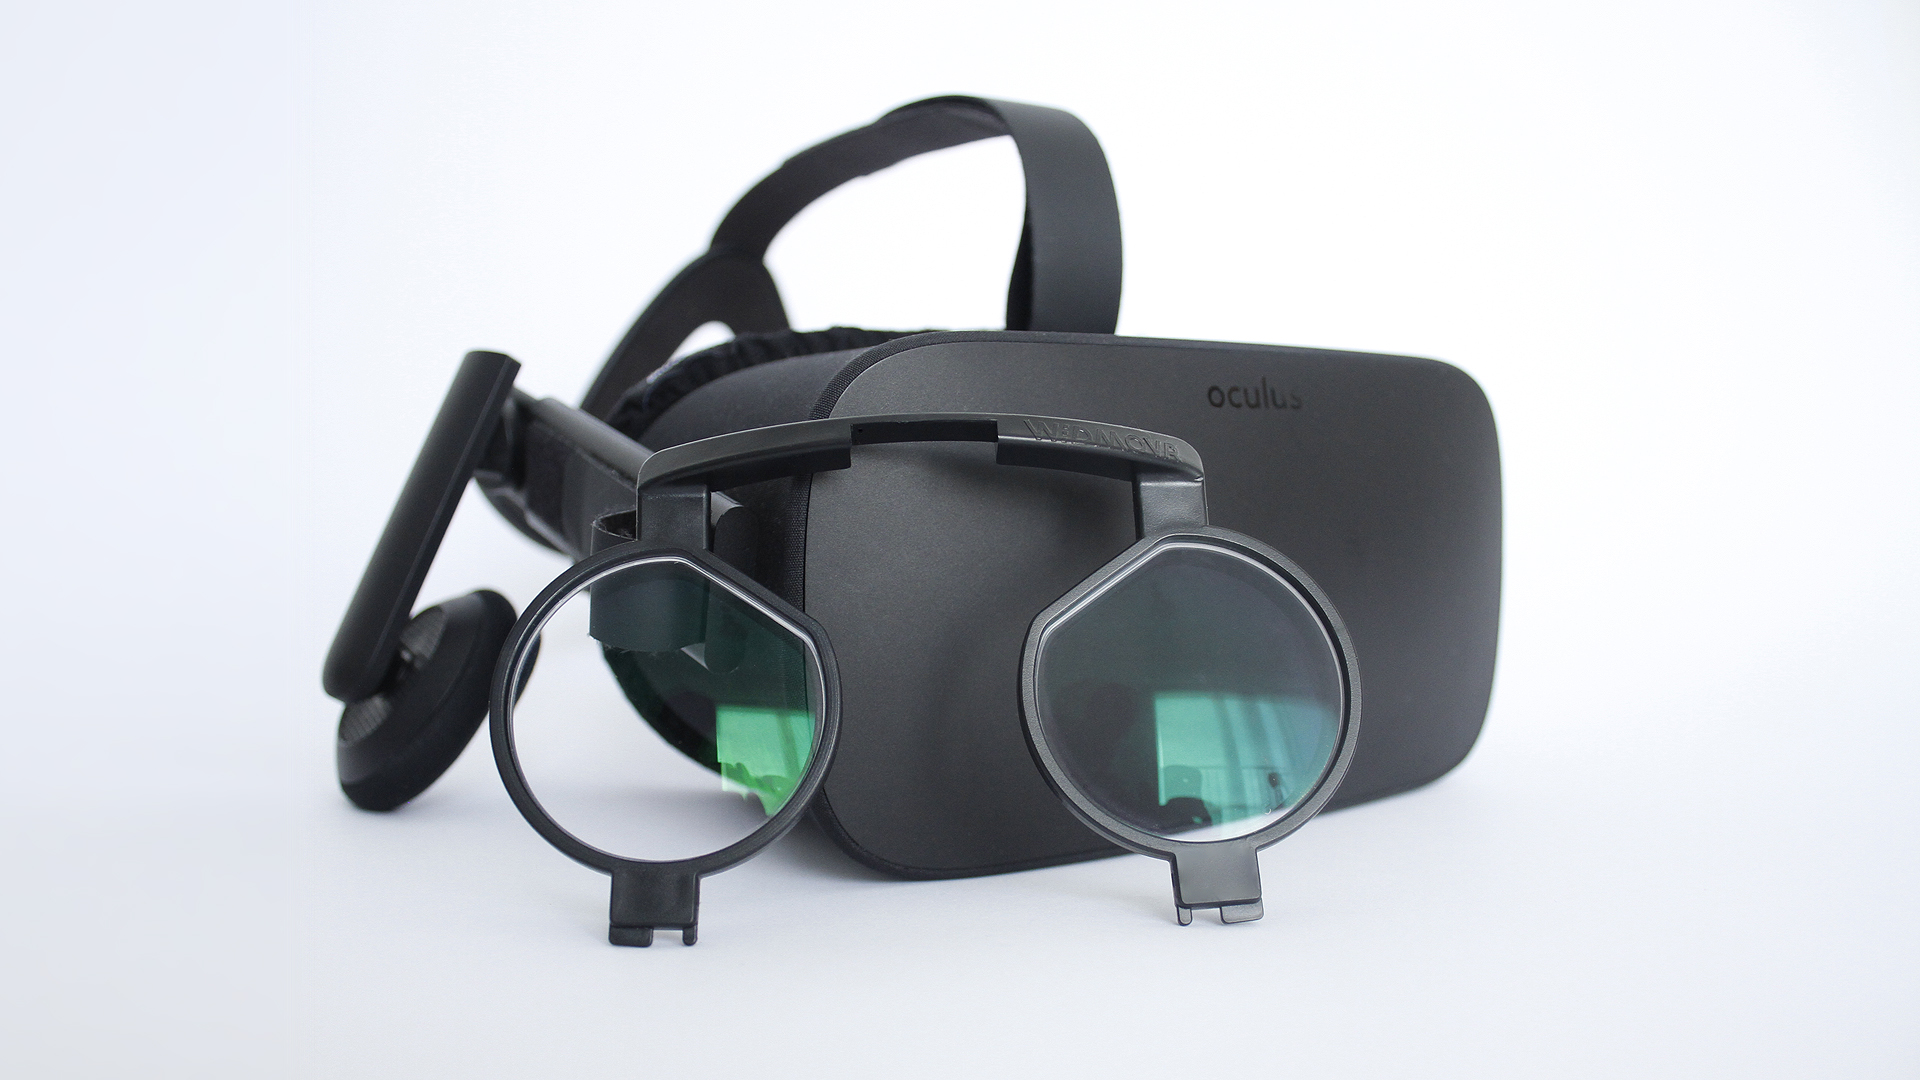 oculus 3d glasses